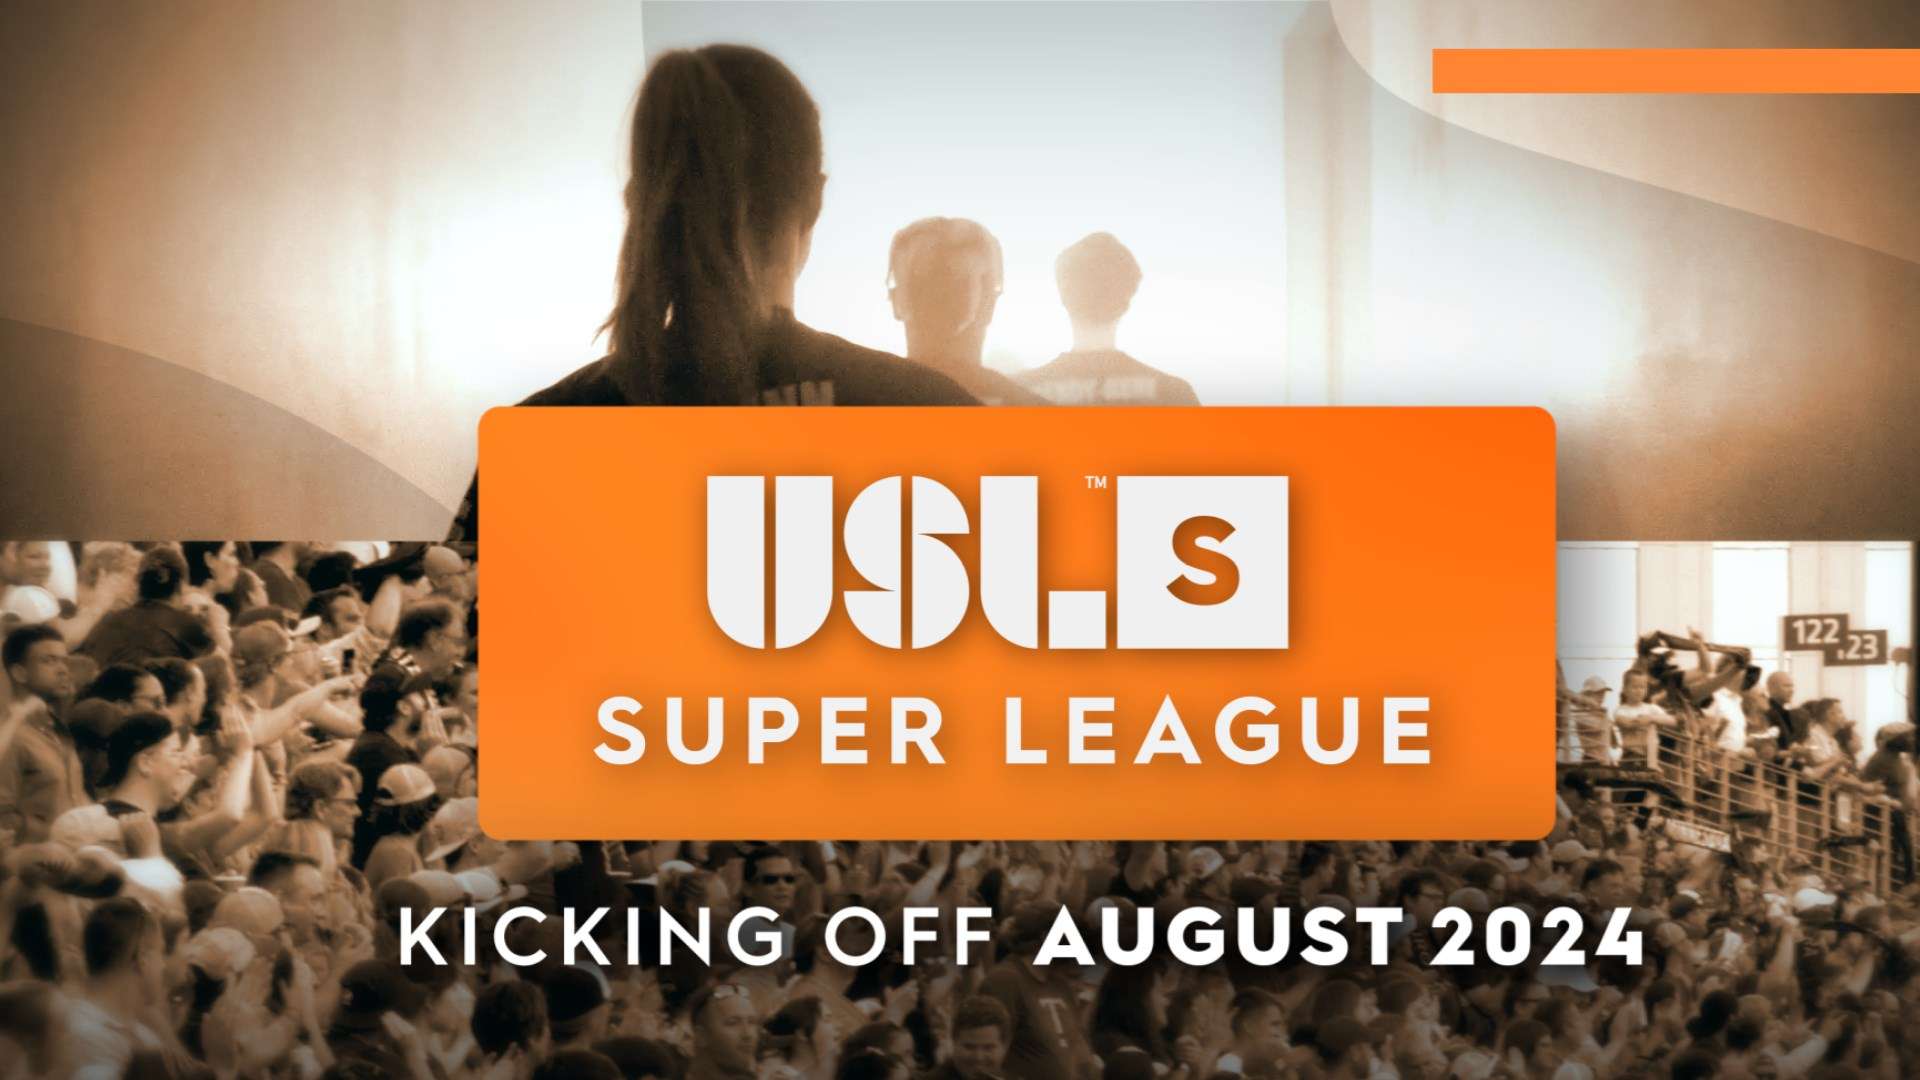 USL Super League promo